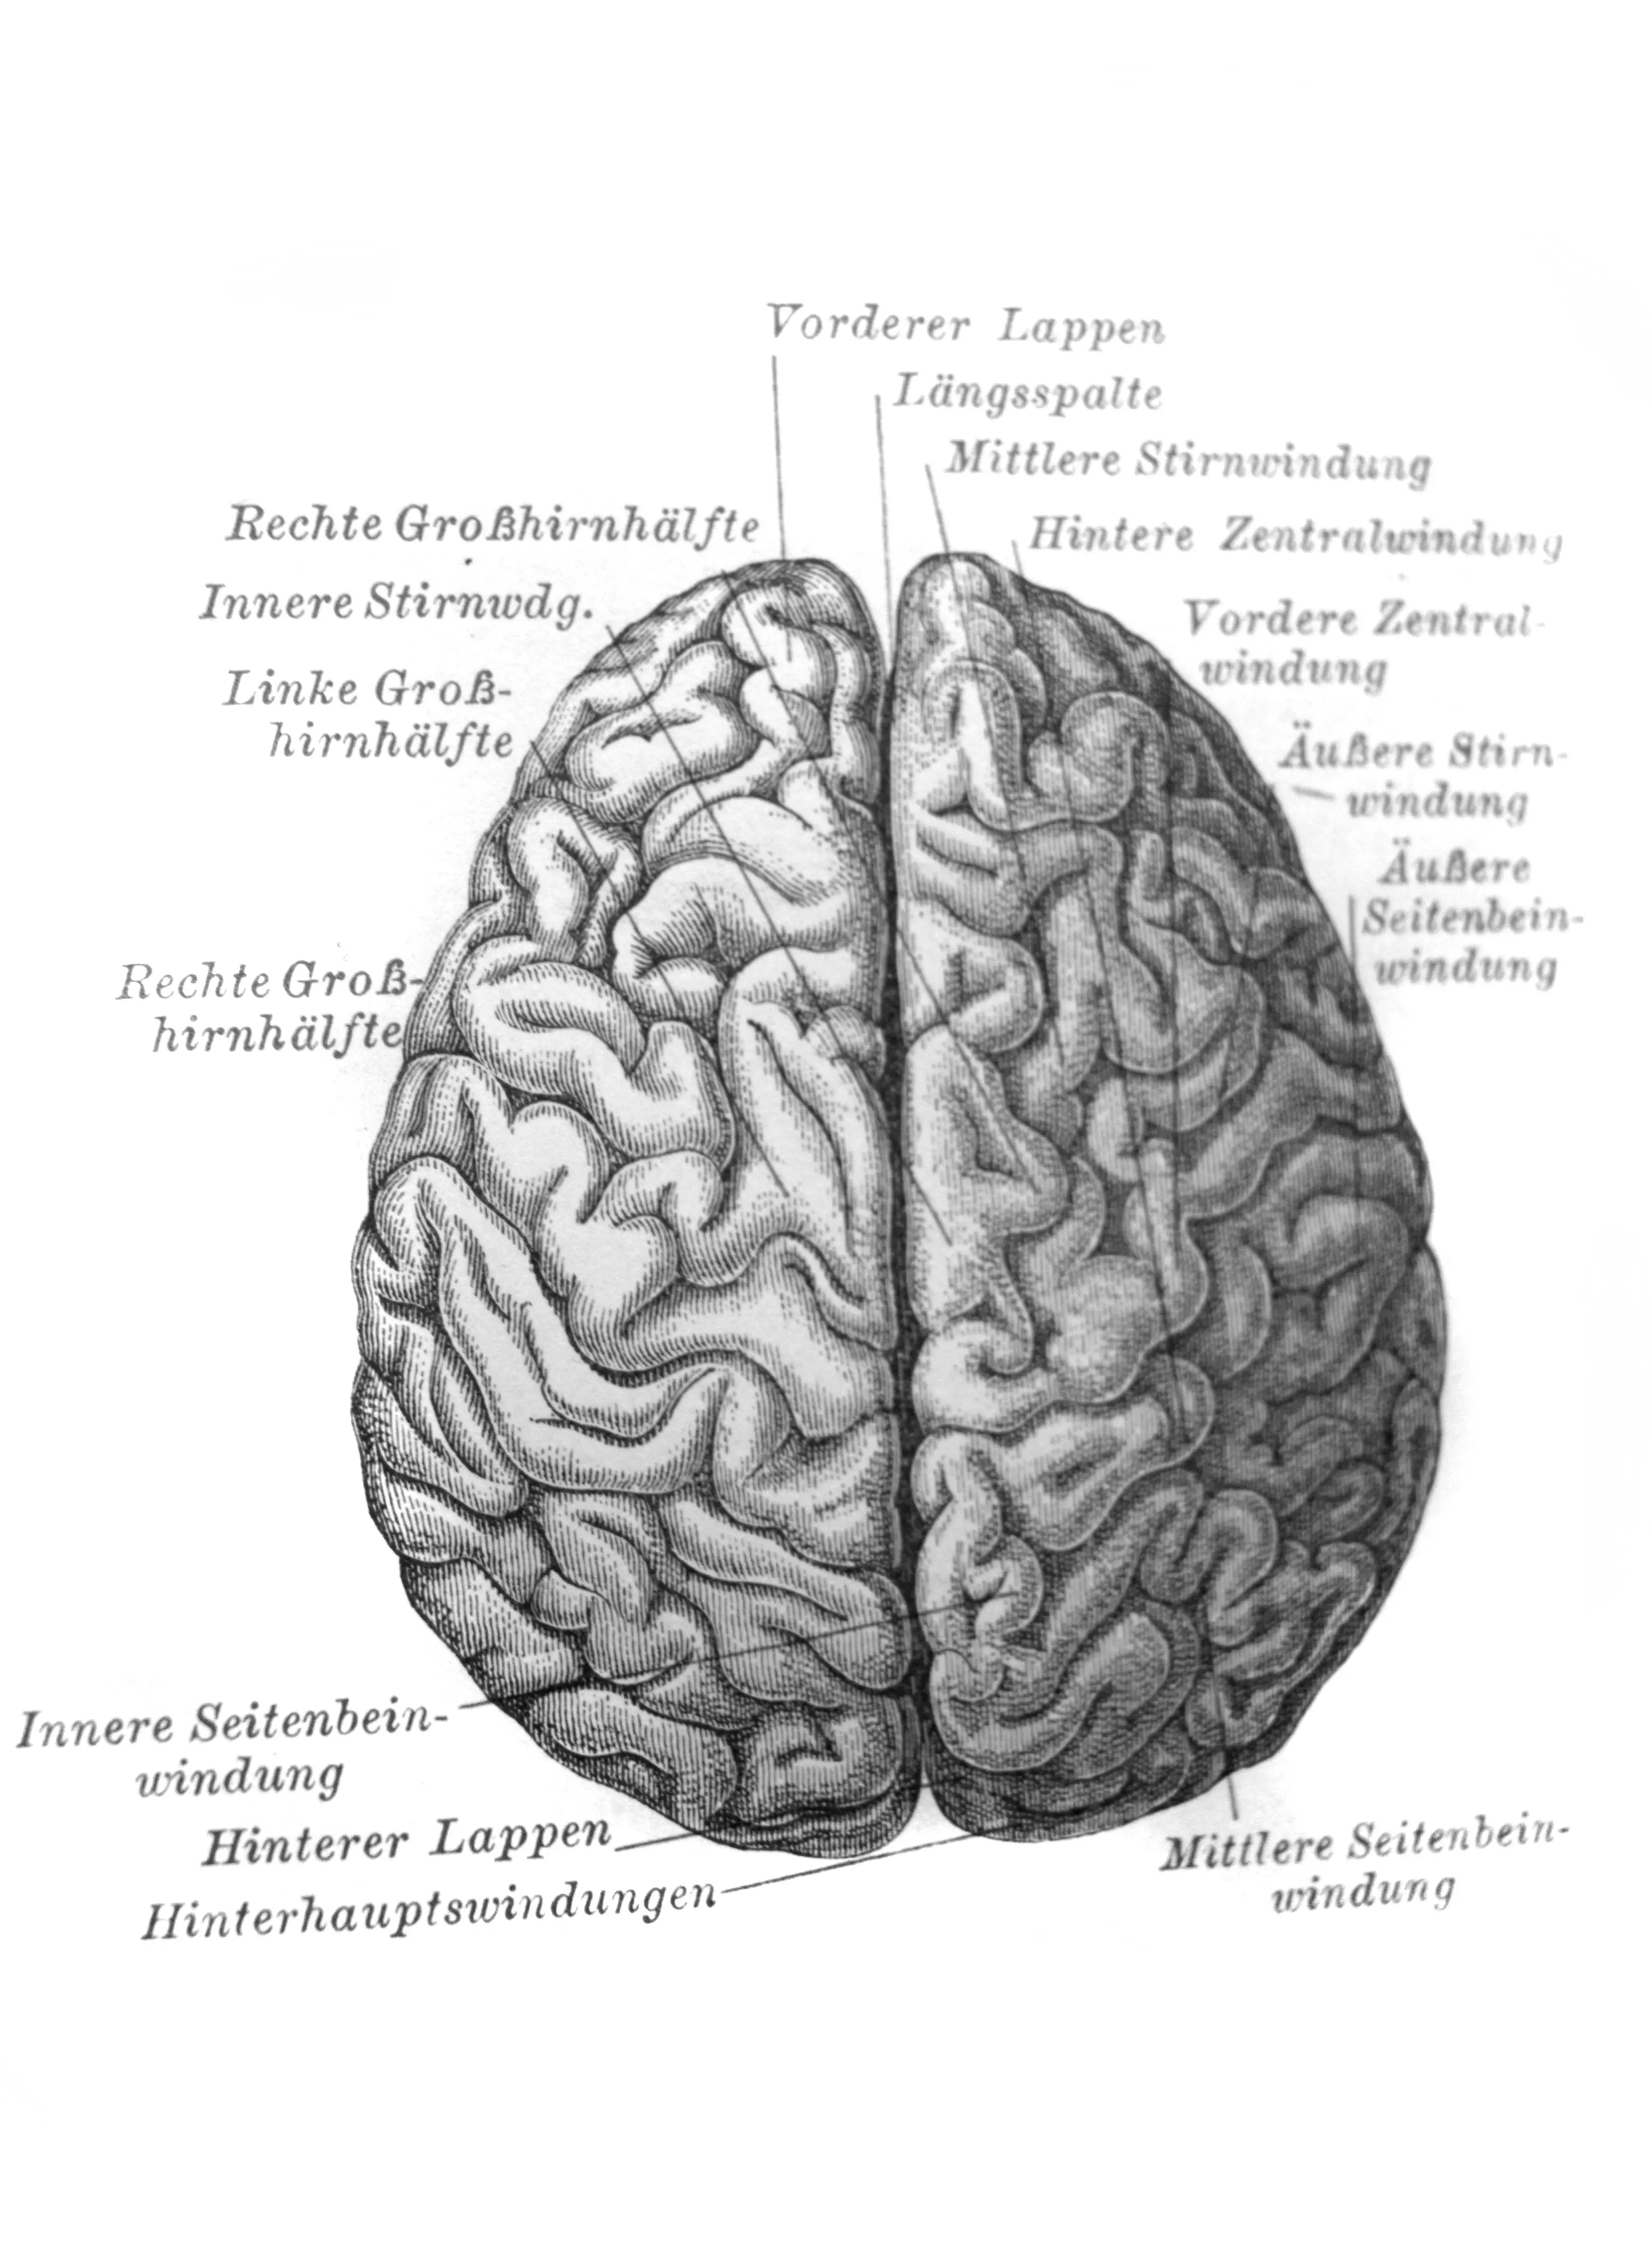 오래된 책 Meyers Lexicon&#44; vol. 1897년 7월&#44; 라이프치히 뇌